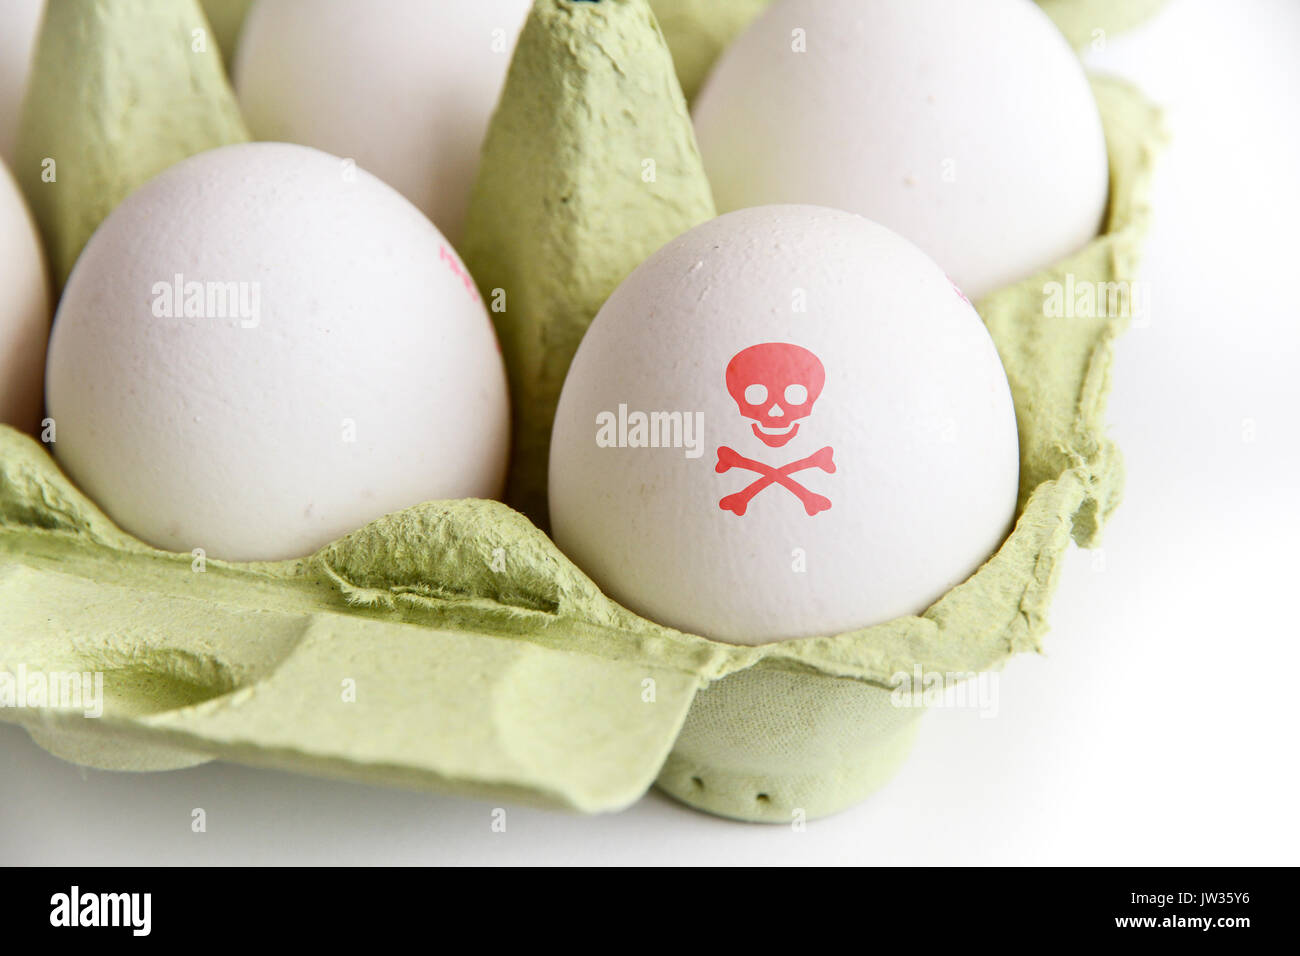 Eier in der Papier-Paket mit einem Ei mit einem roten giftig Gefahr symbol Schädel und Knochen bemalt. Bild Konzept für Lebensmittel Verunreinigungen und ei Skandal. Stockfoto